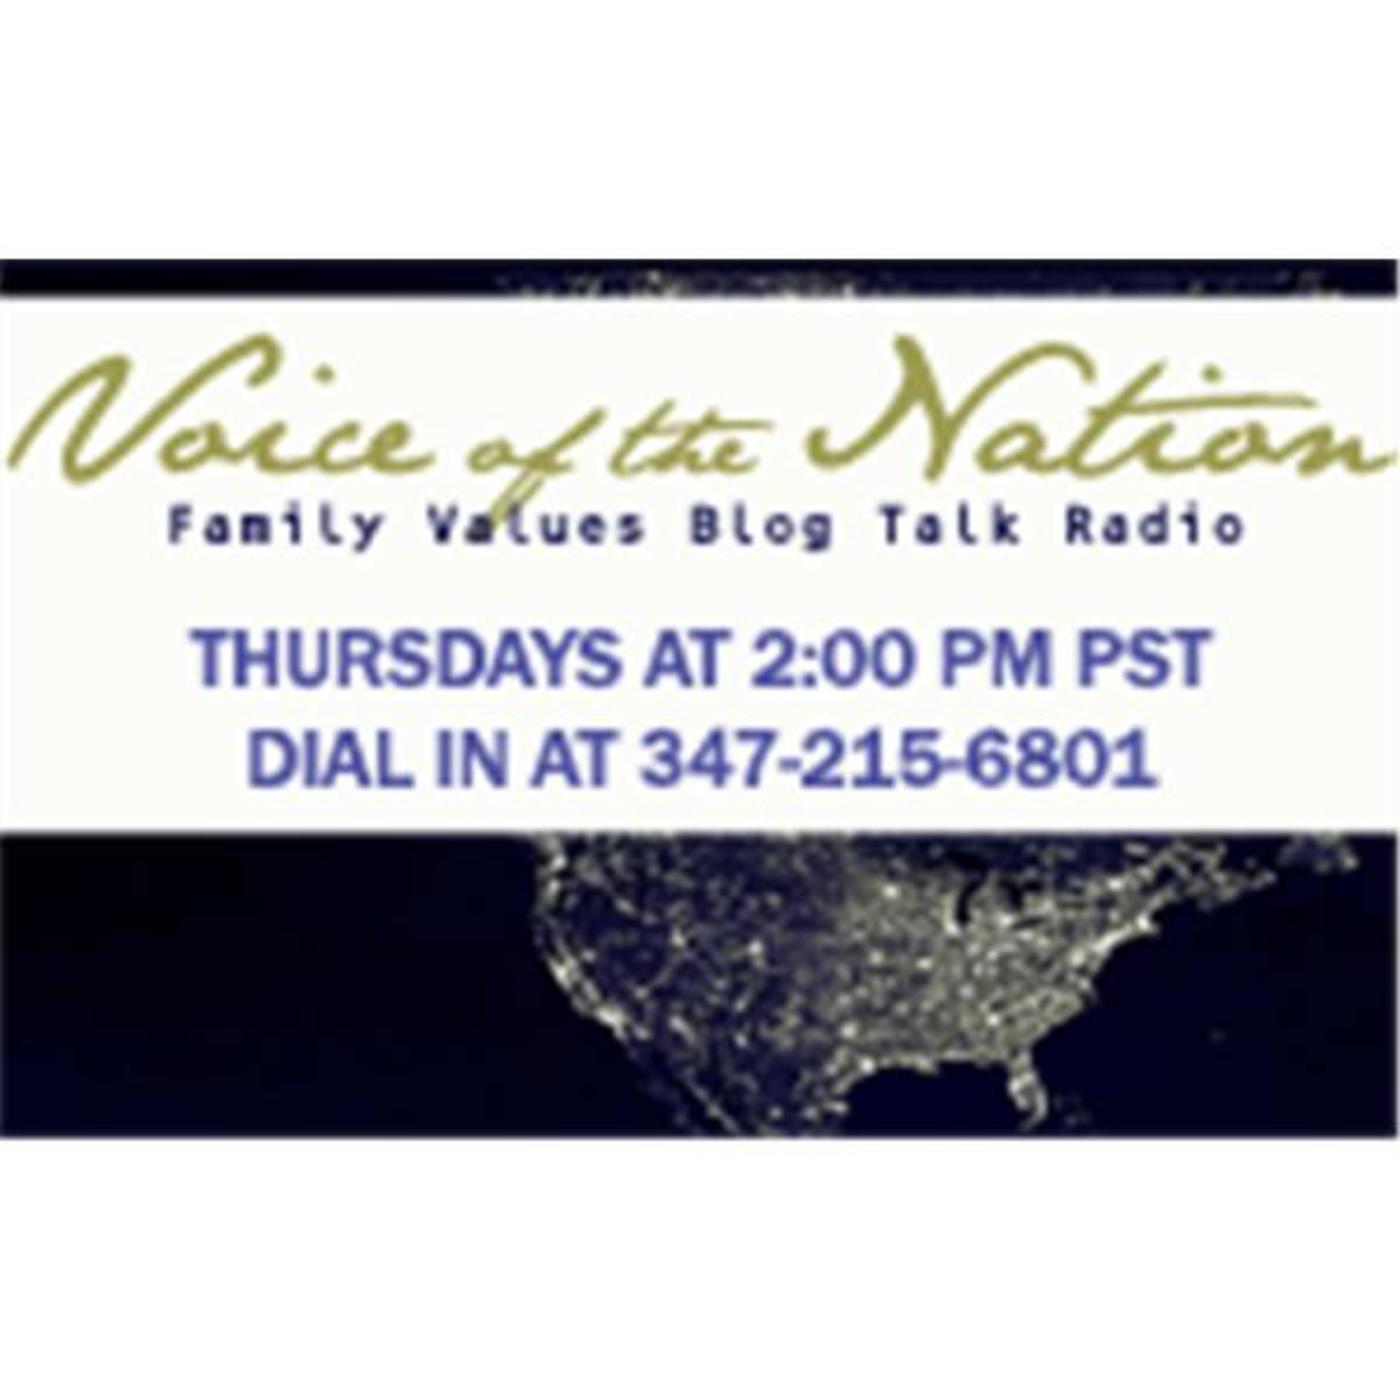 The Family Values Blog Talk Radio Show:UFI/DNA